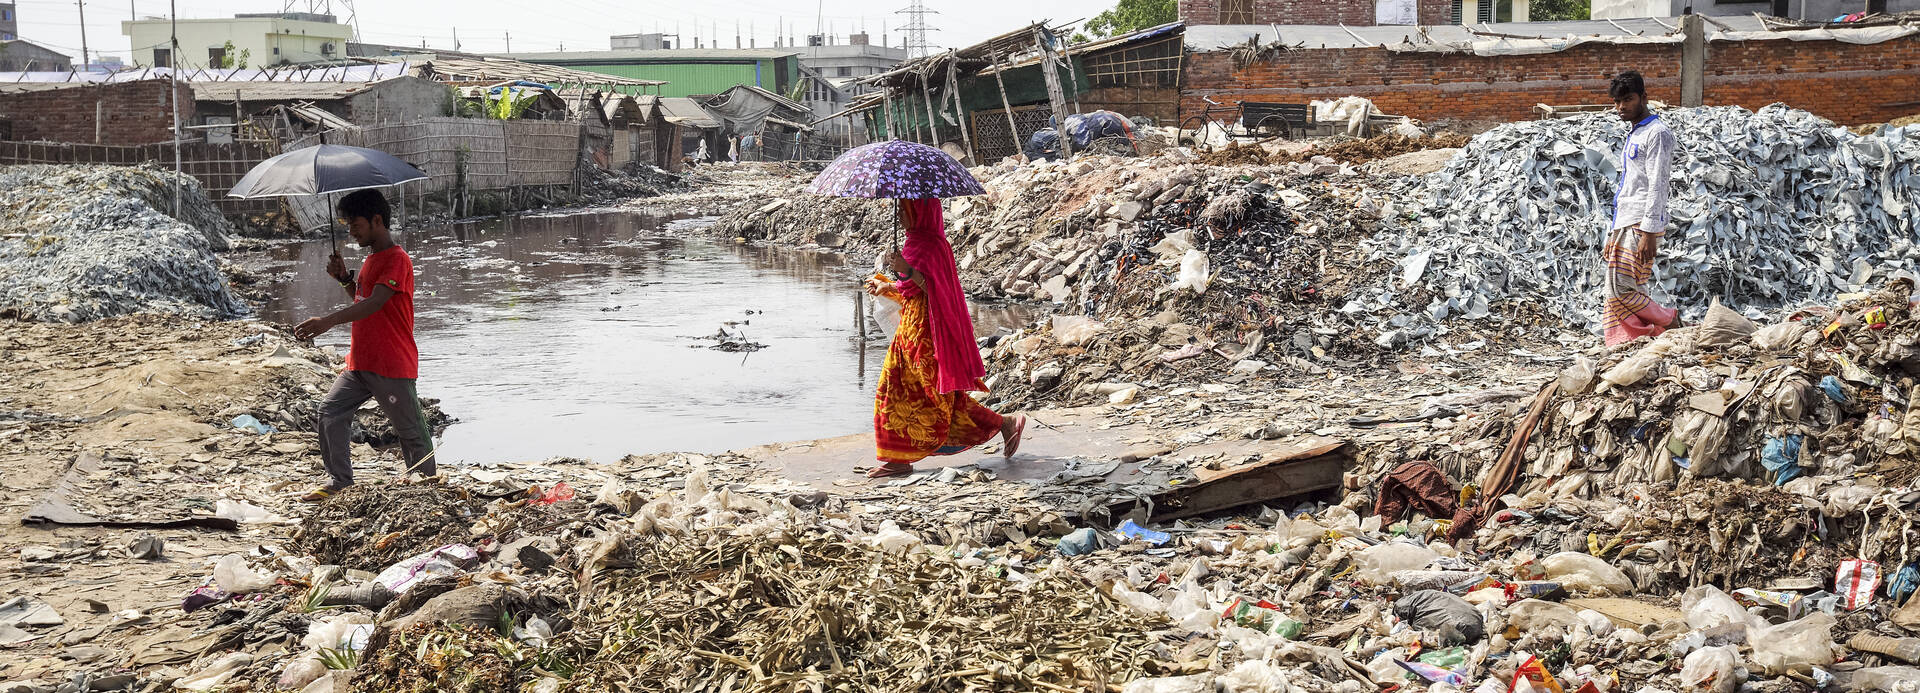 Drei Menschen aus Bangladesch laufen mit Schirmen durch ein Feld voller Abfälle einer Gerberei